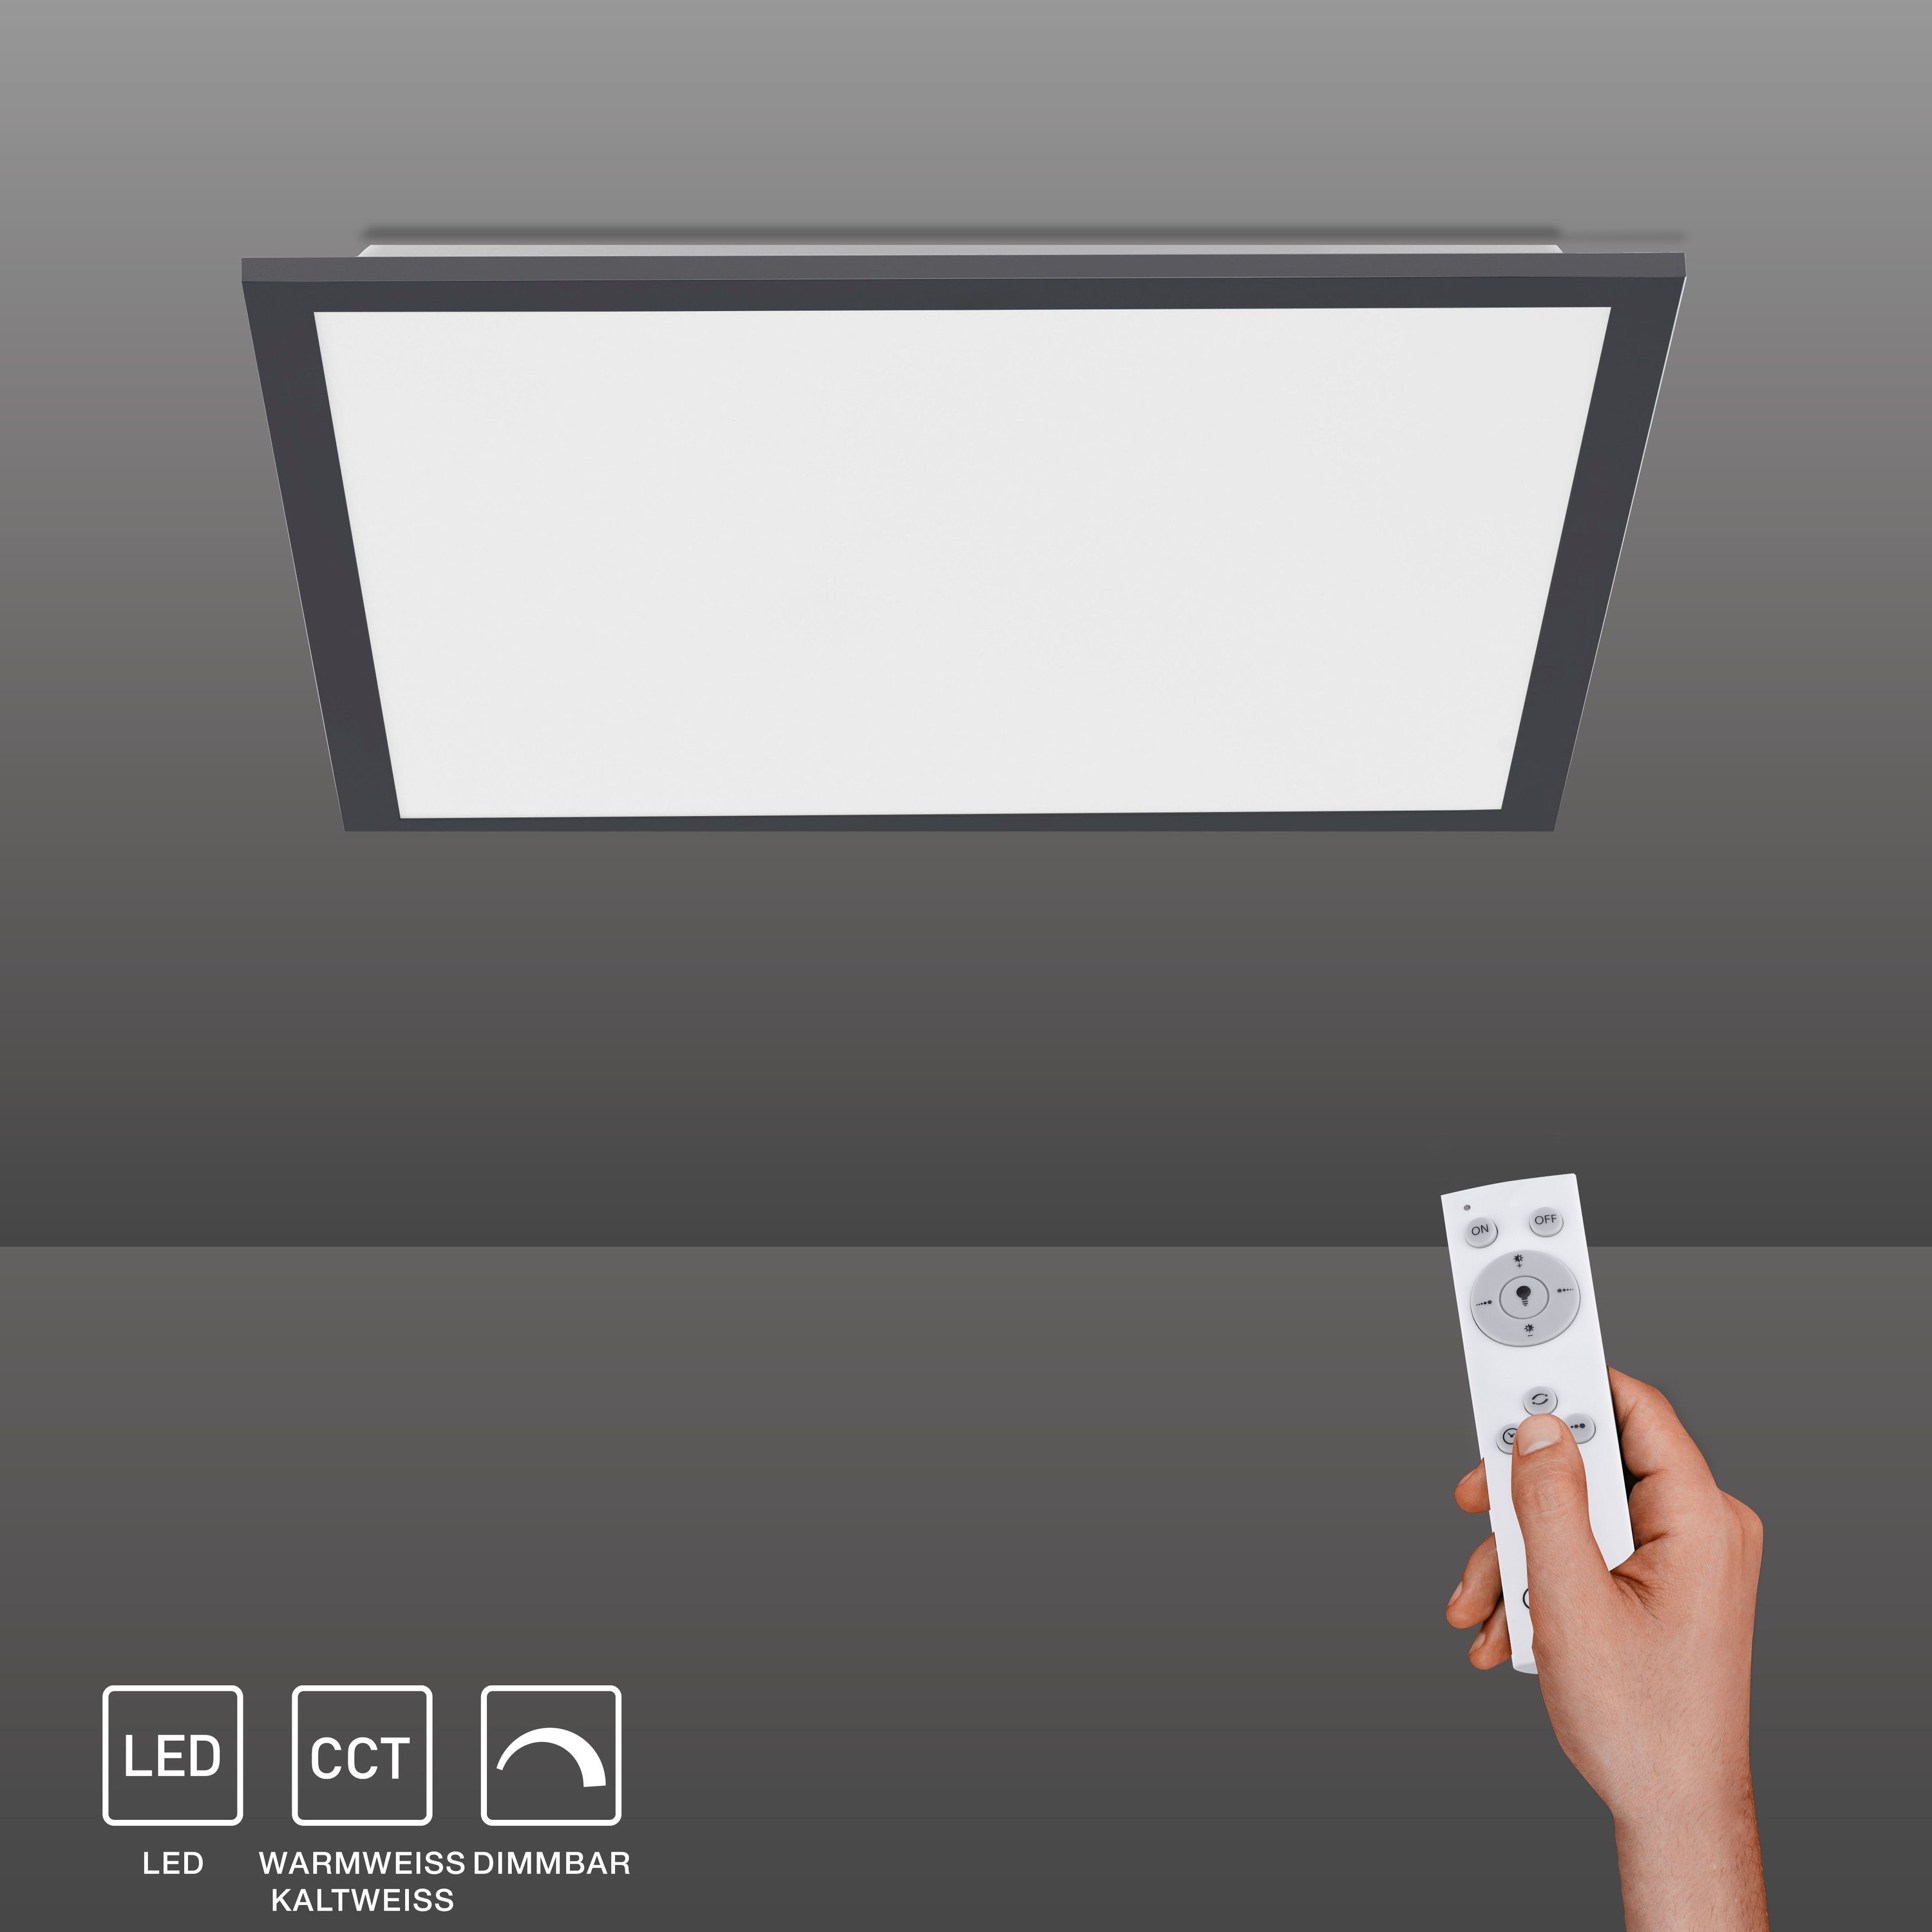 SellTec LED Panel »FLAT schwarz«, 45x45cm, CCT warmweiß - kaltweiß,  Fernbedienung online kaufen | OTTO